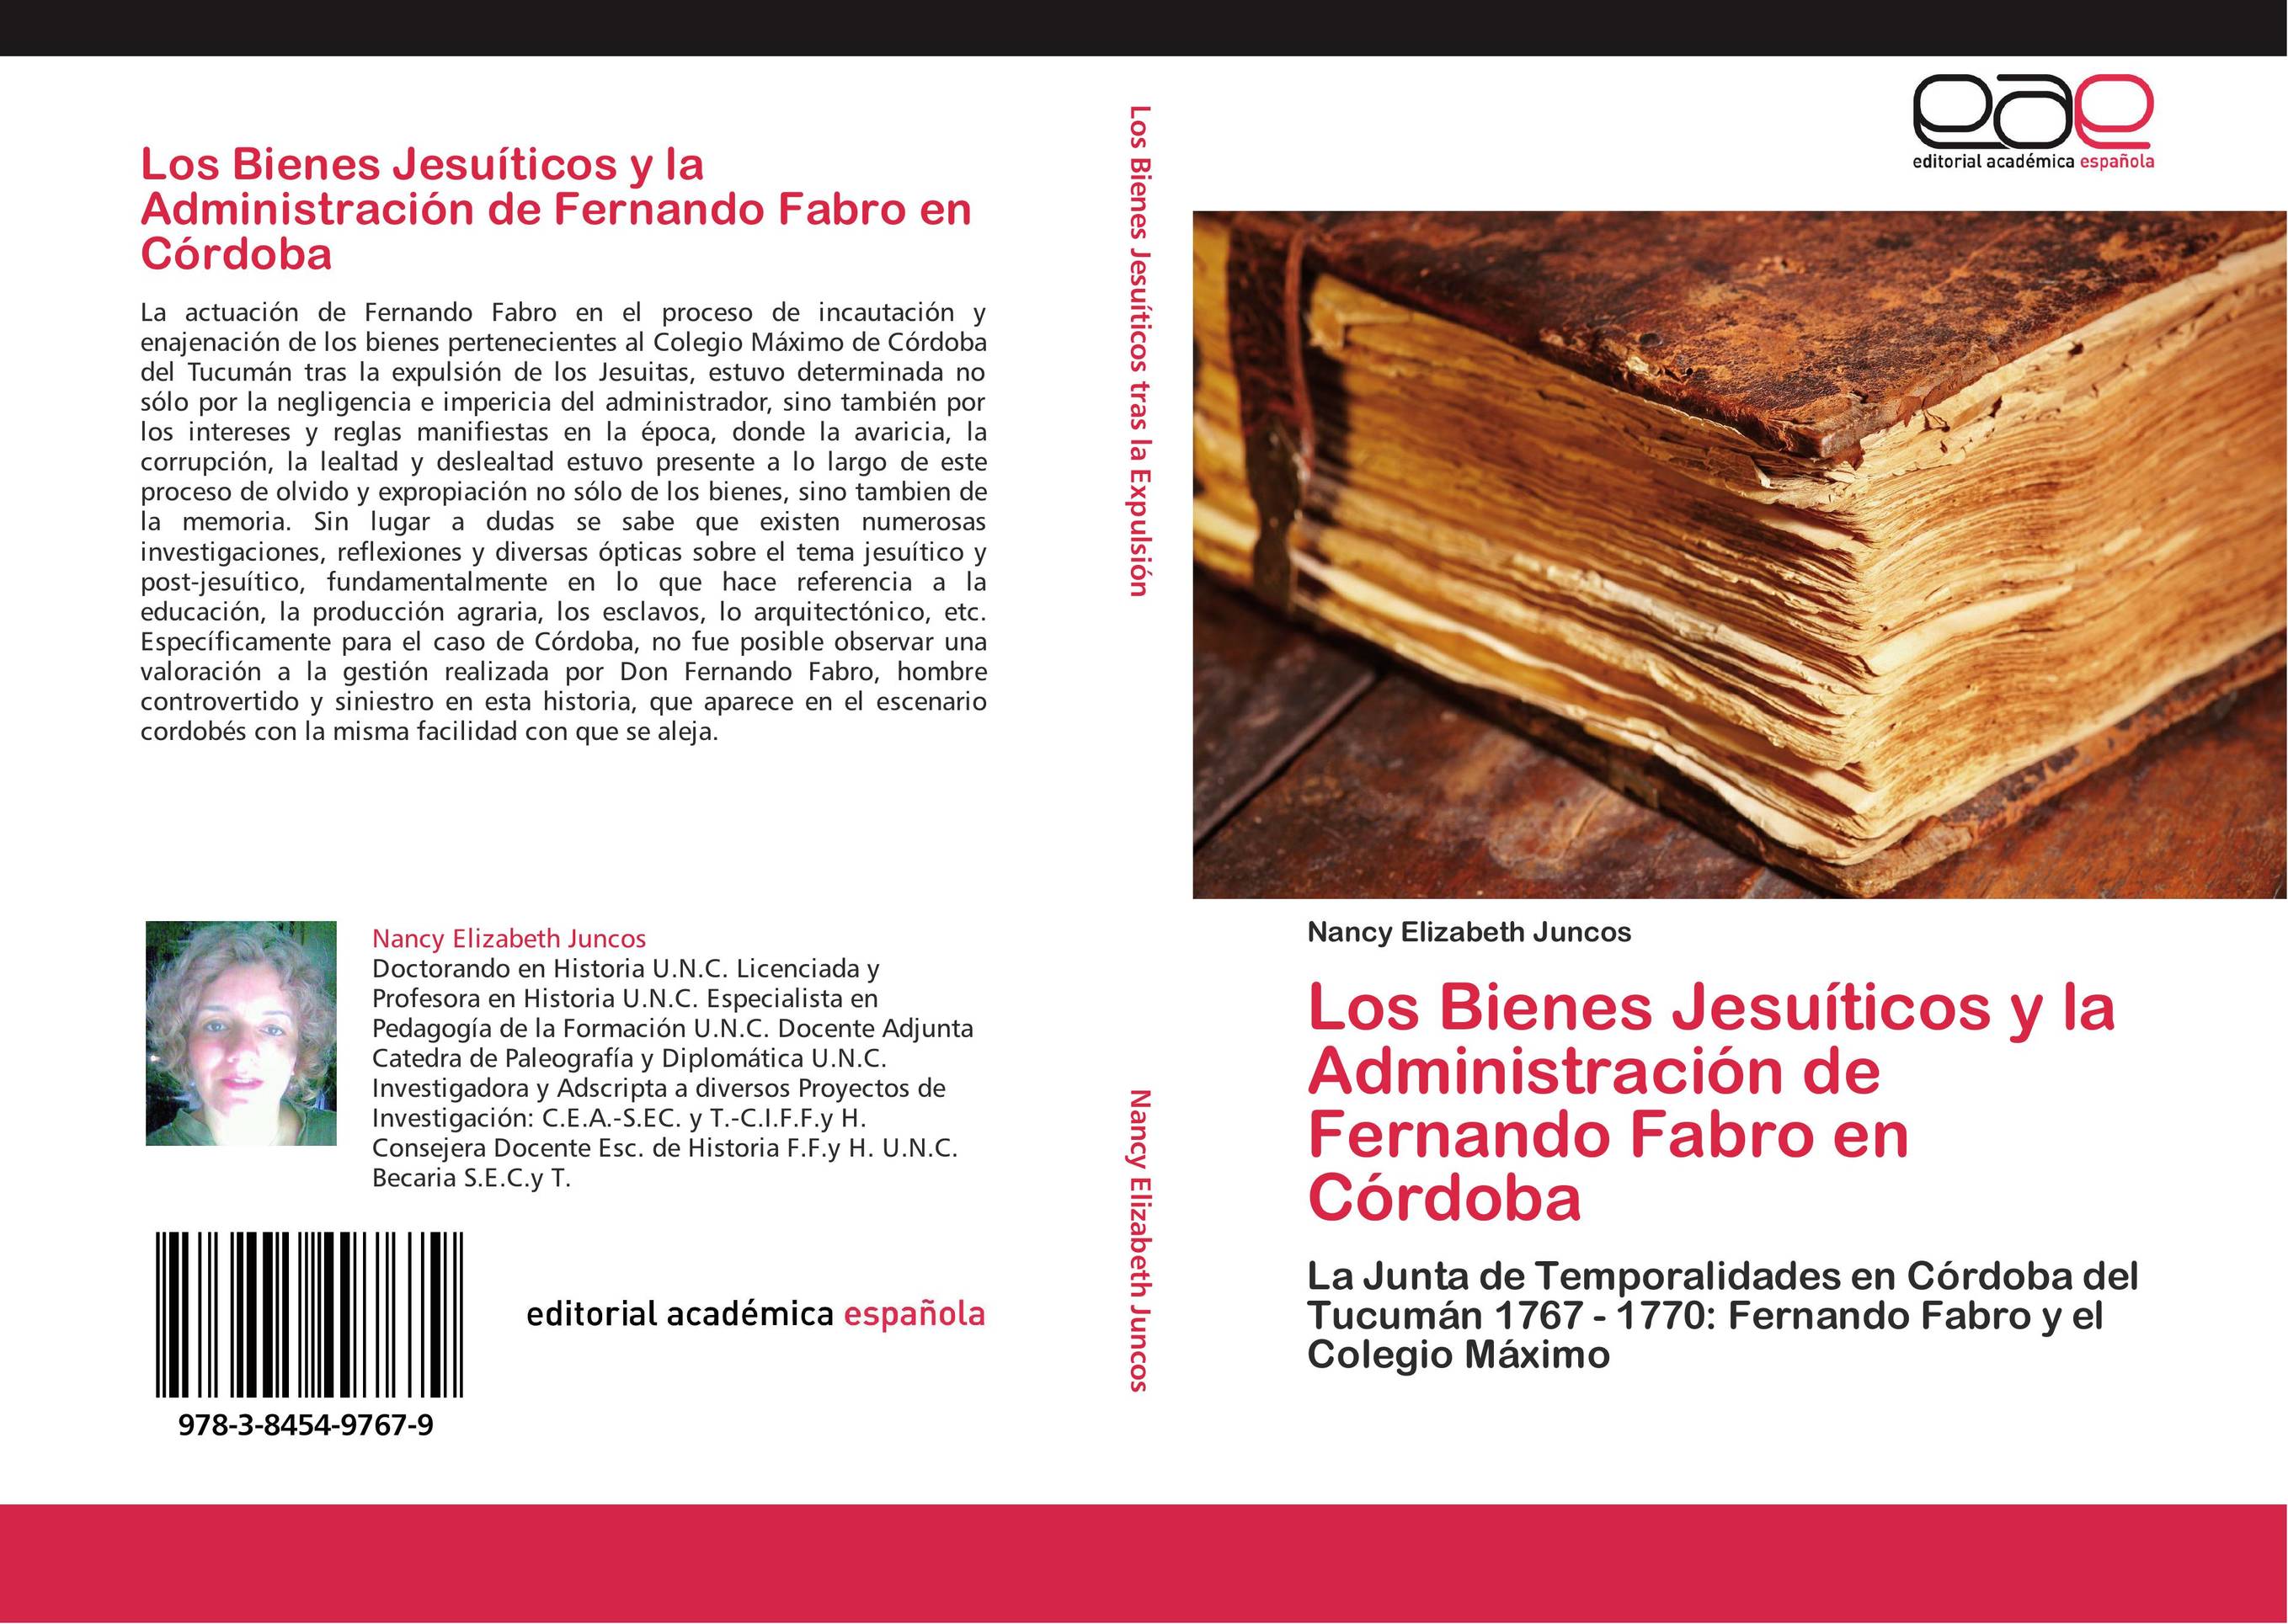 Los Bienes Jesuíticos y la Administración de Fernando Fabro en Córdoba